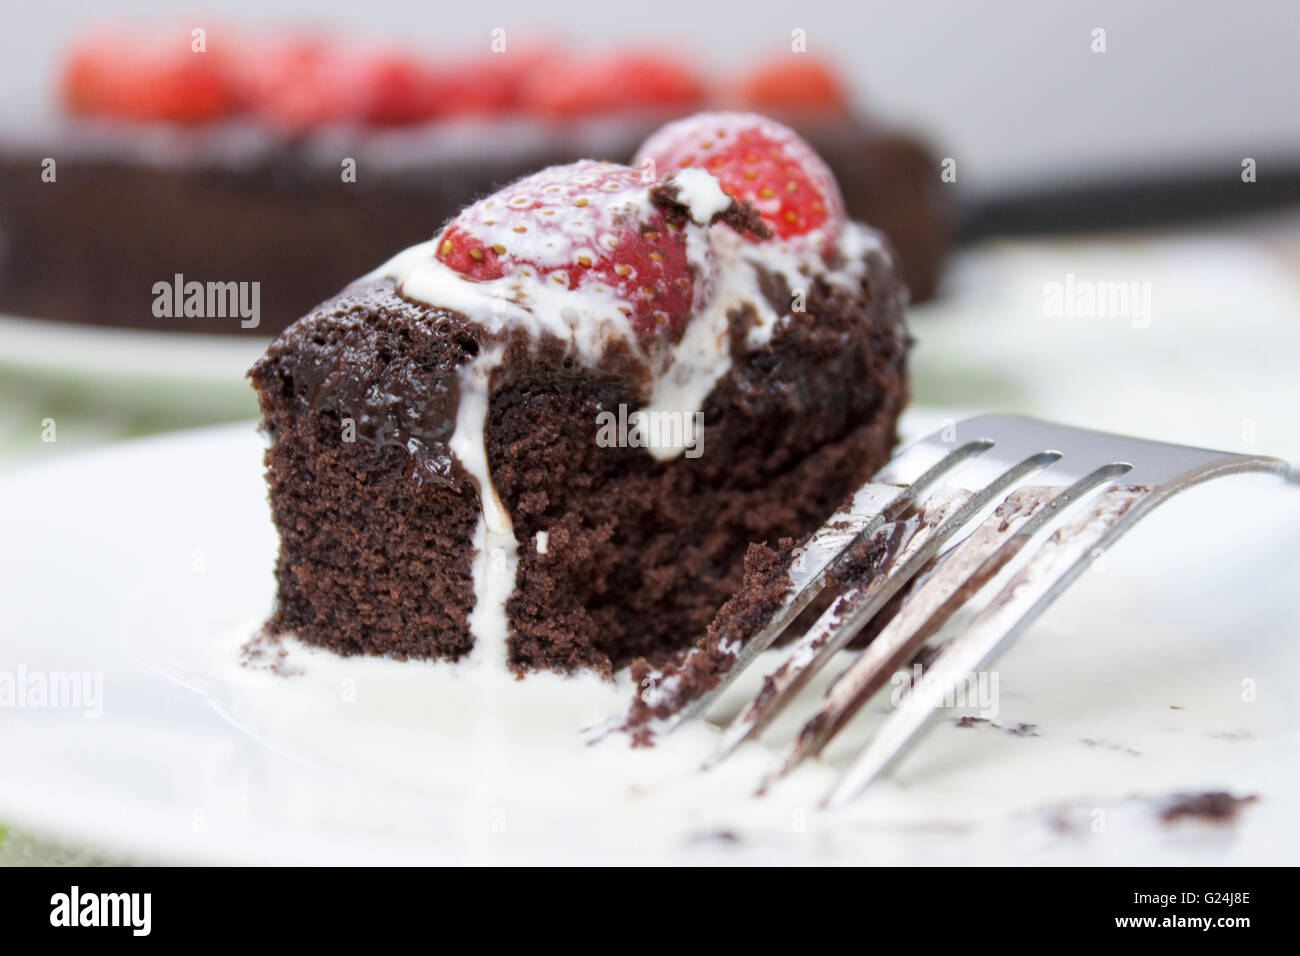 Tranche de gâteau fondant au chocolat garnie de fraise est couvert dans la crème fraîche Banque D'Images